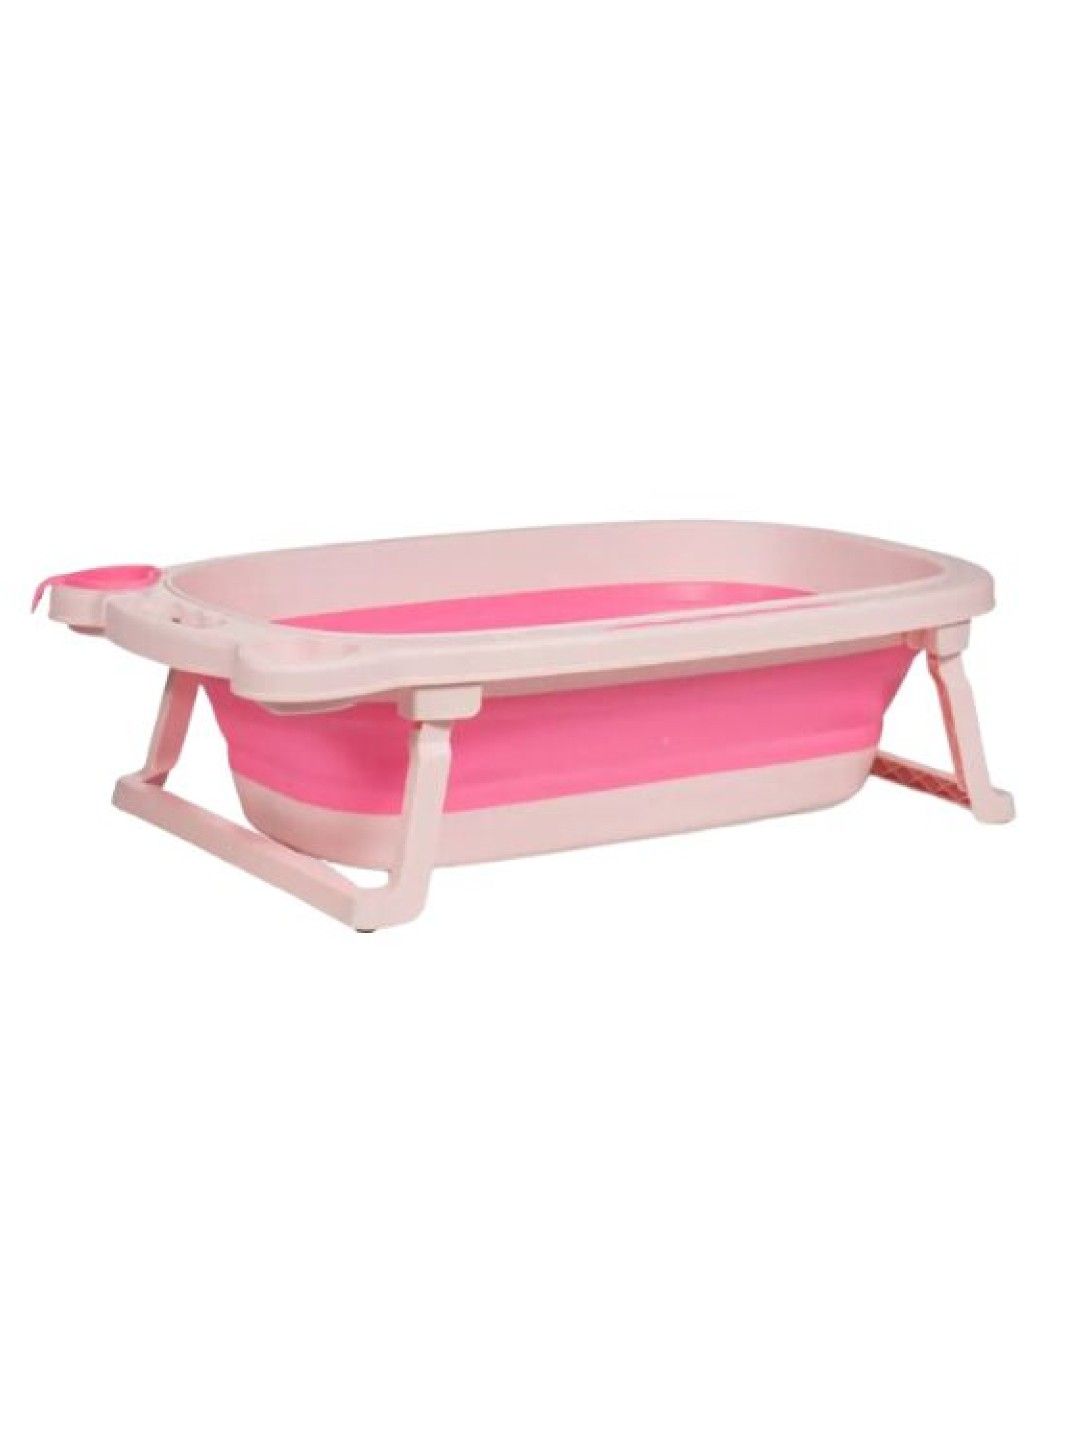 Juju Nursery Collapsible Baby to Toddler Bath Tub Set (Pink) (Pink- Image 1)